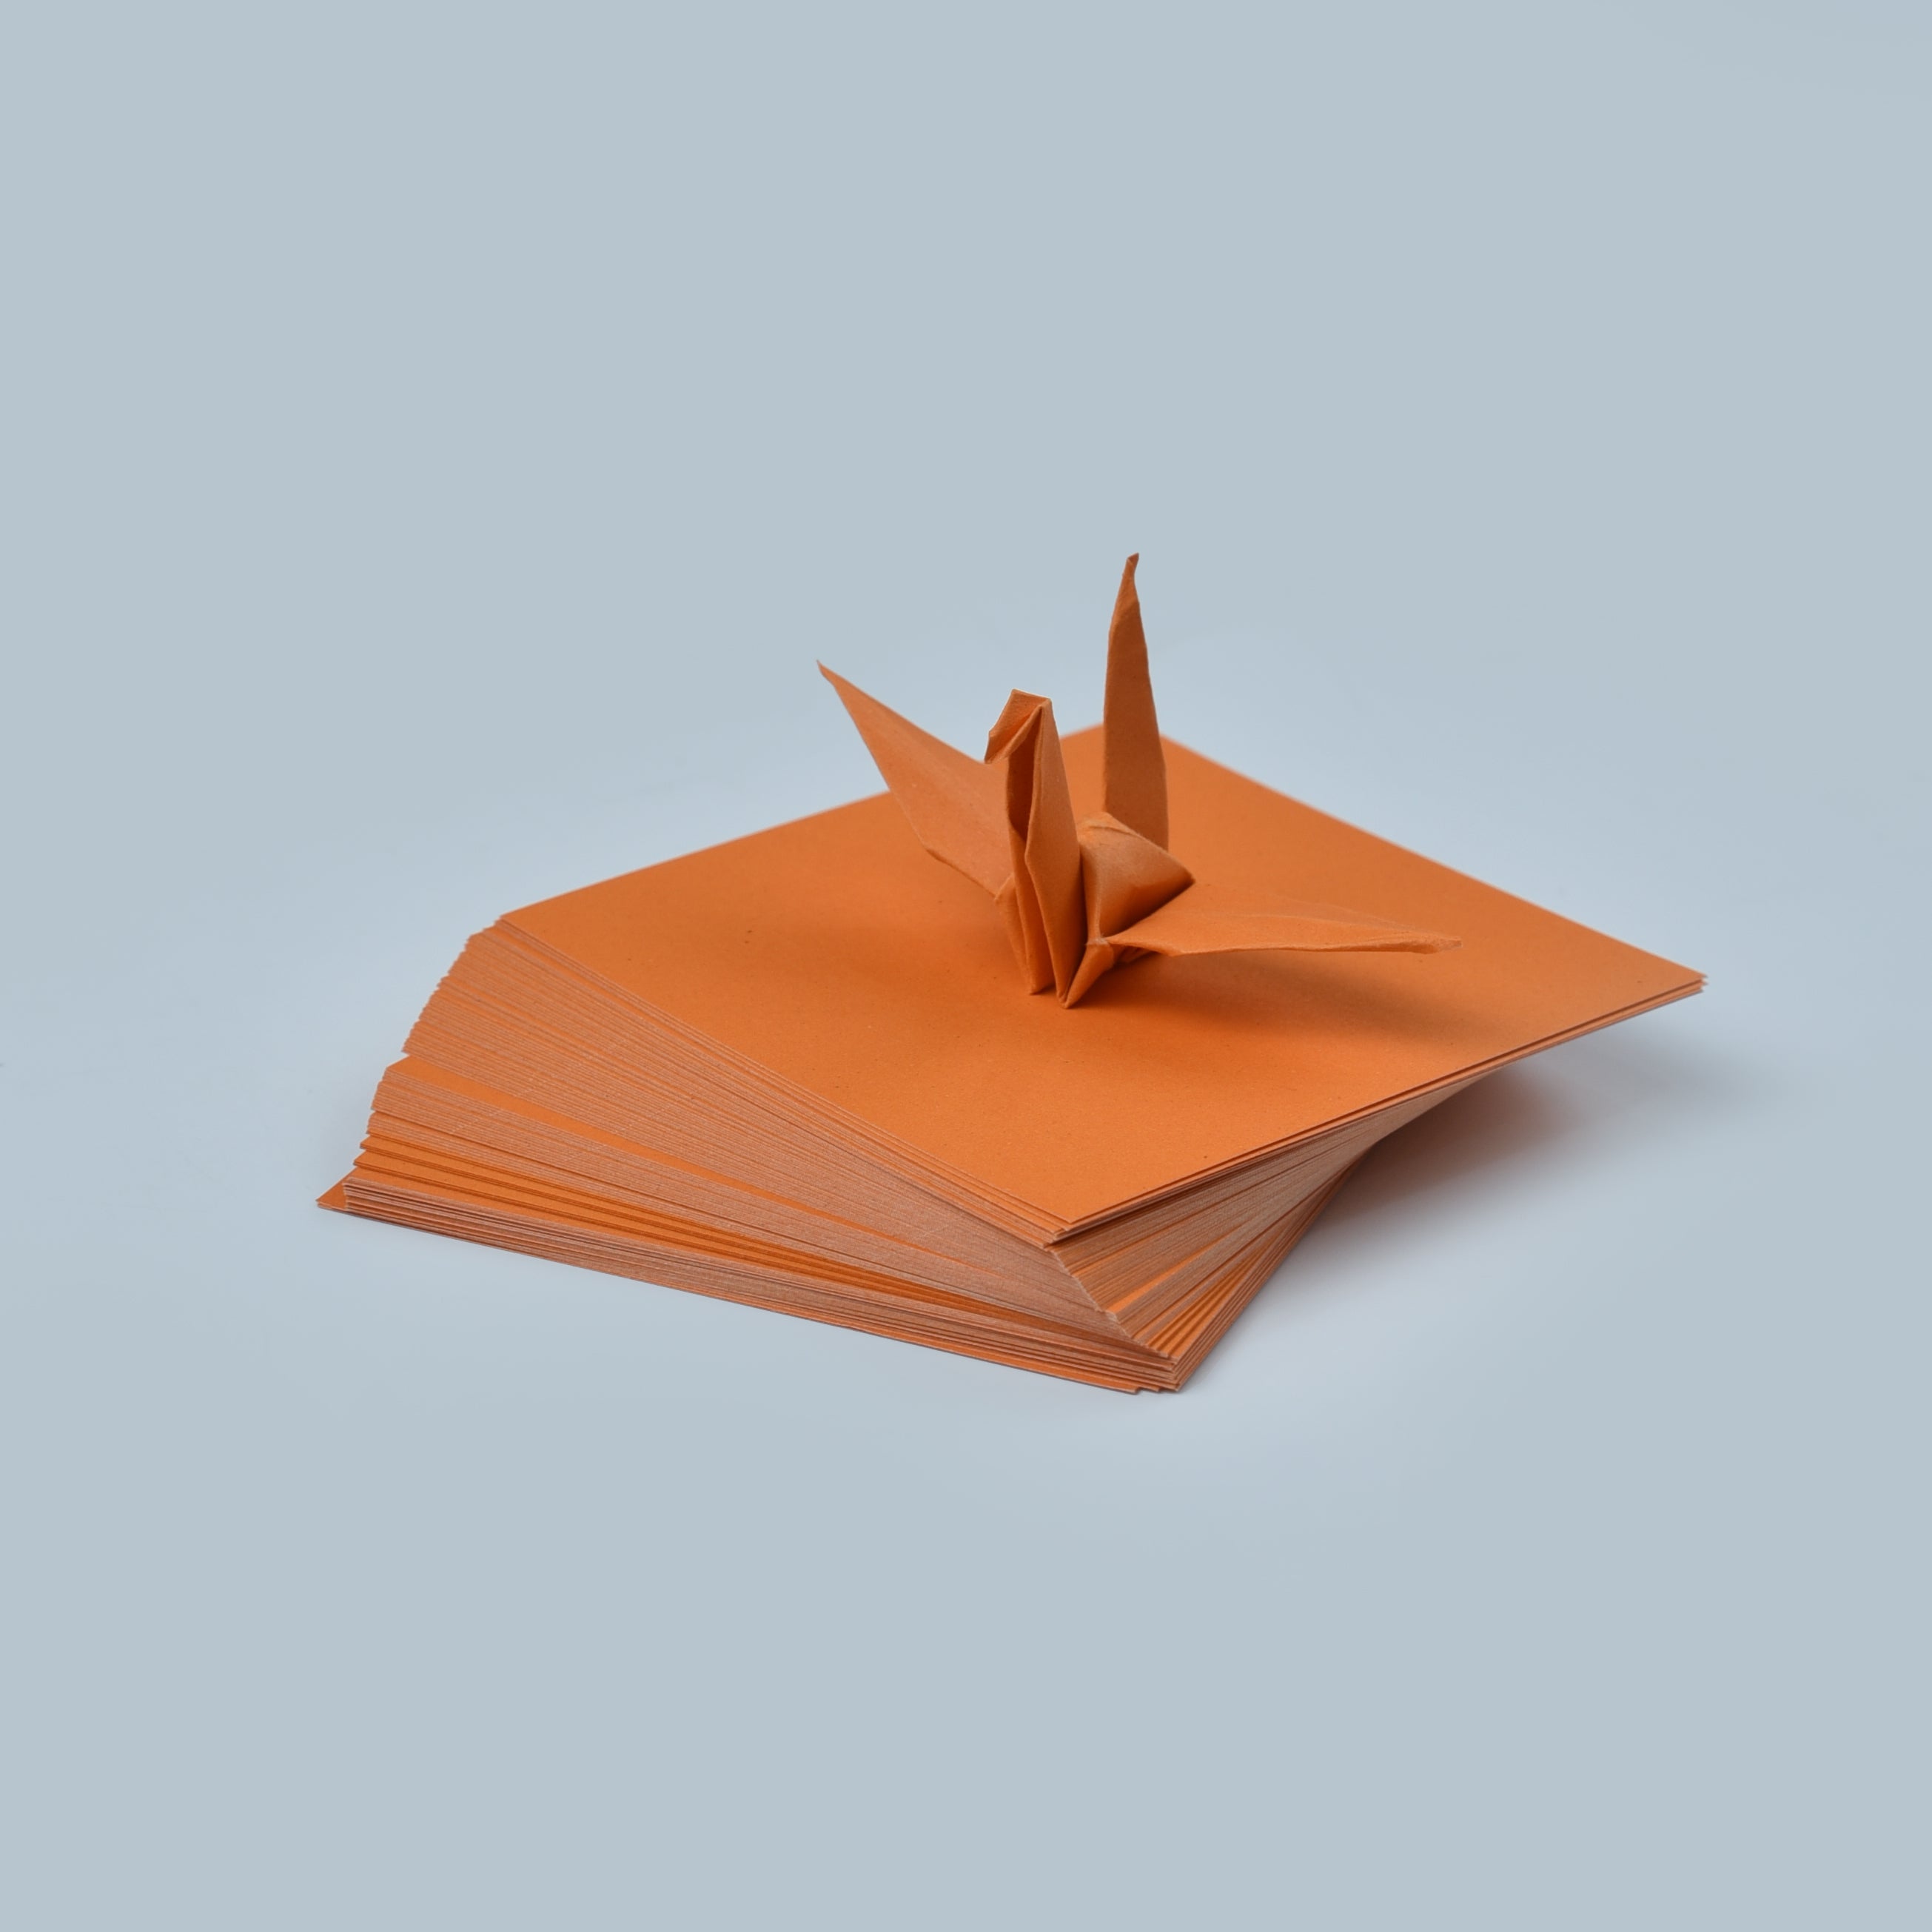 100 Hojas de Papel Origami - 3x3 pulgadas - Paquete de Papel Cuadrado para Plegar, Grullas de Origami y Decoración - S14